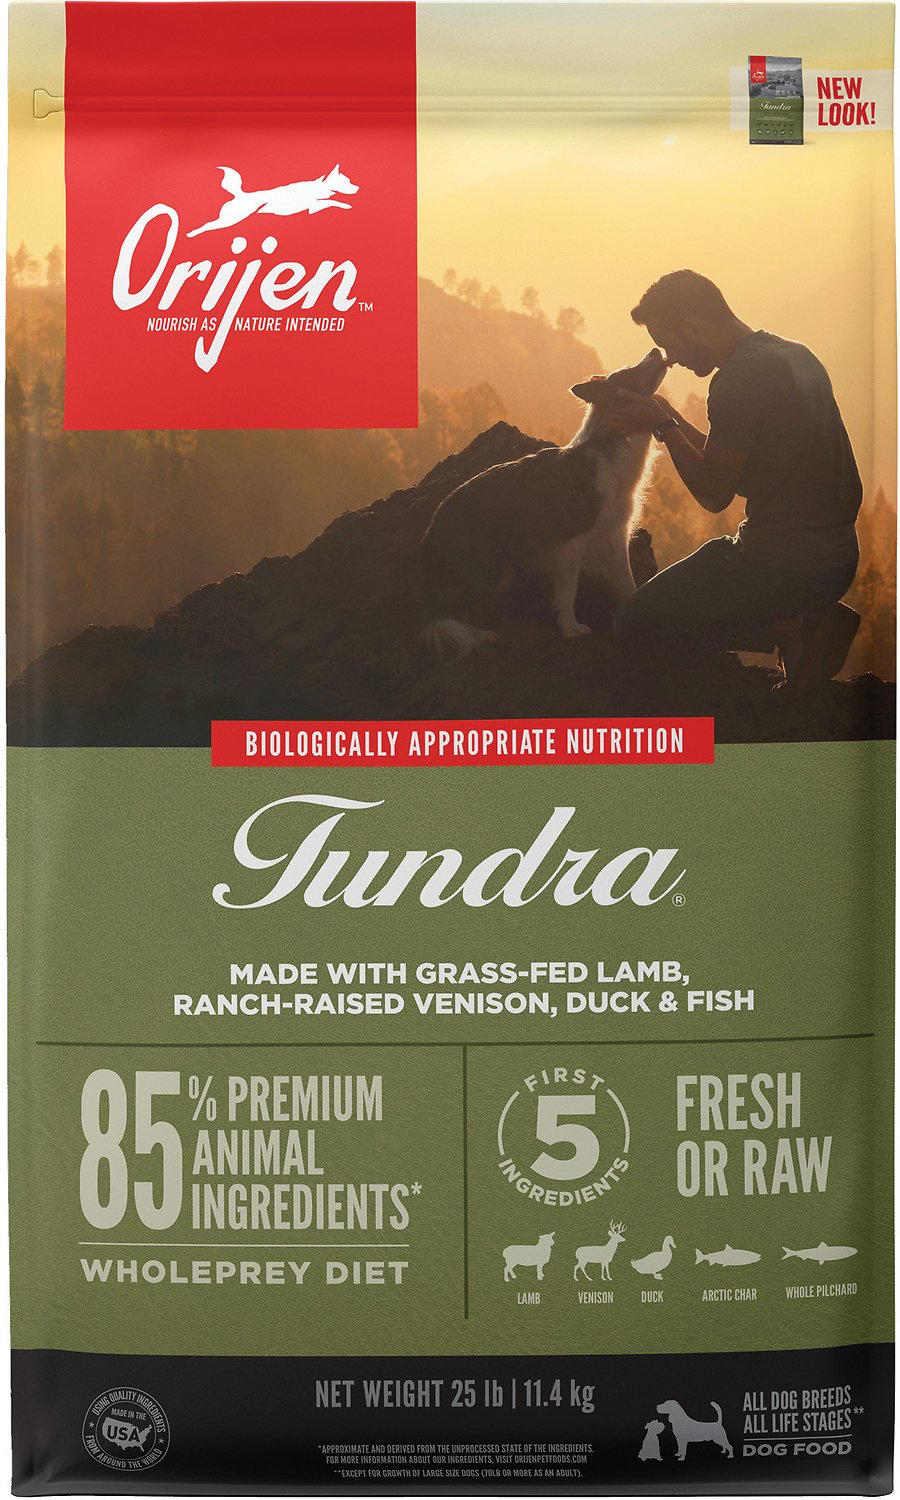 Orijen Tundra Dog Food